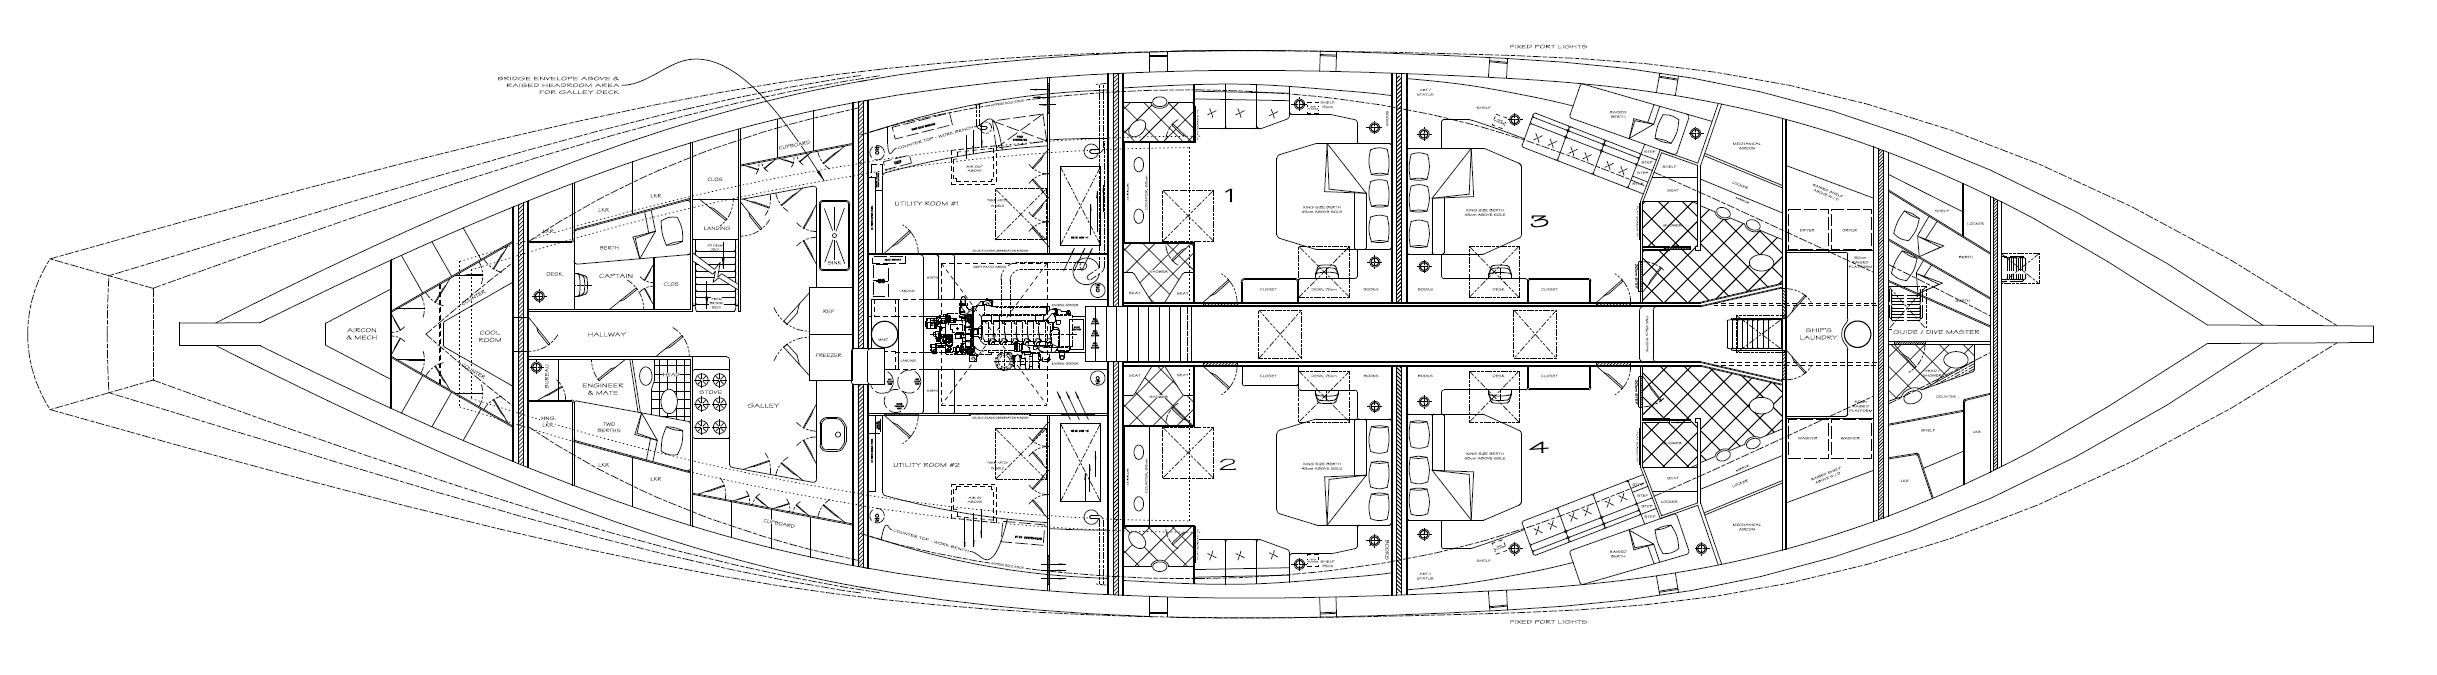 38m AMANDIRA Guest Deck - Kasten Marine Design, Inc.